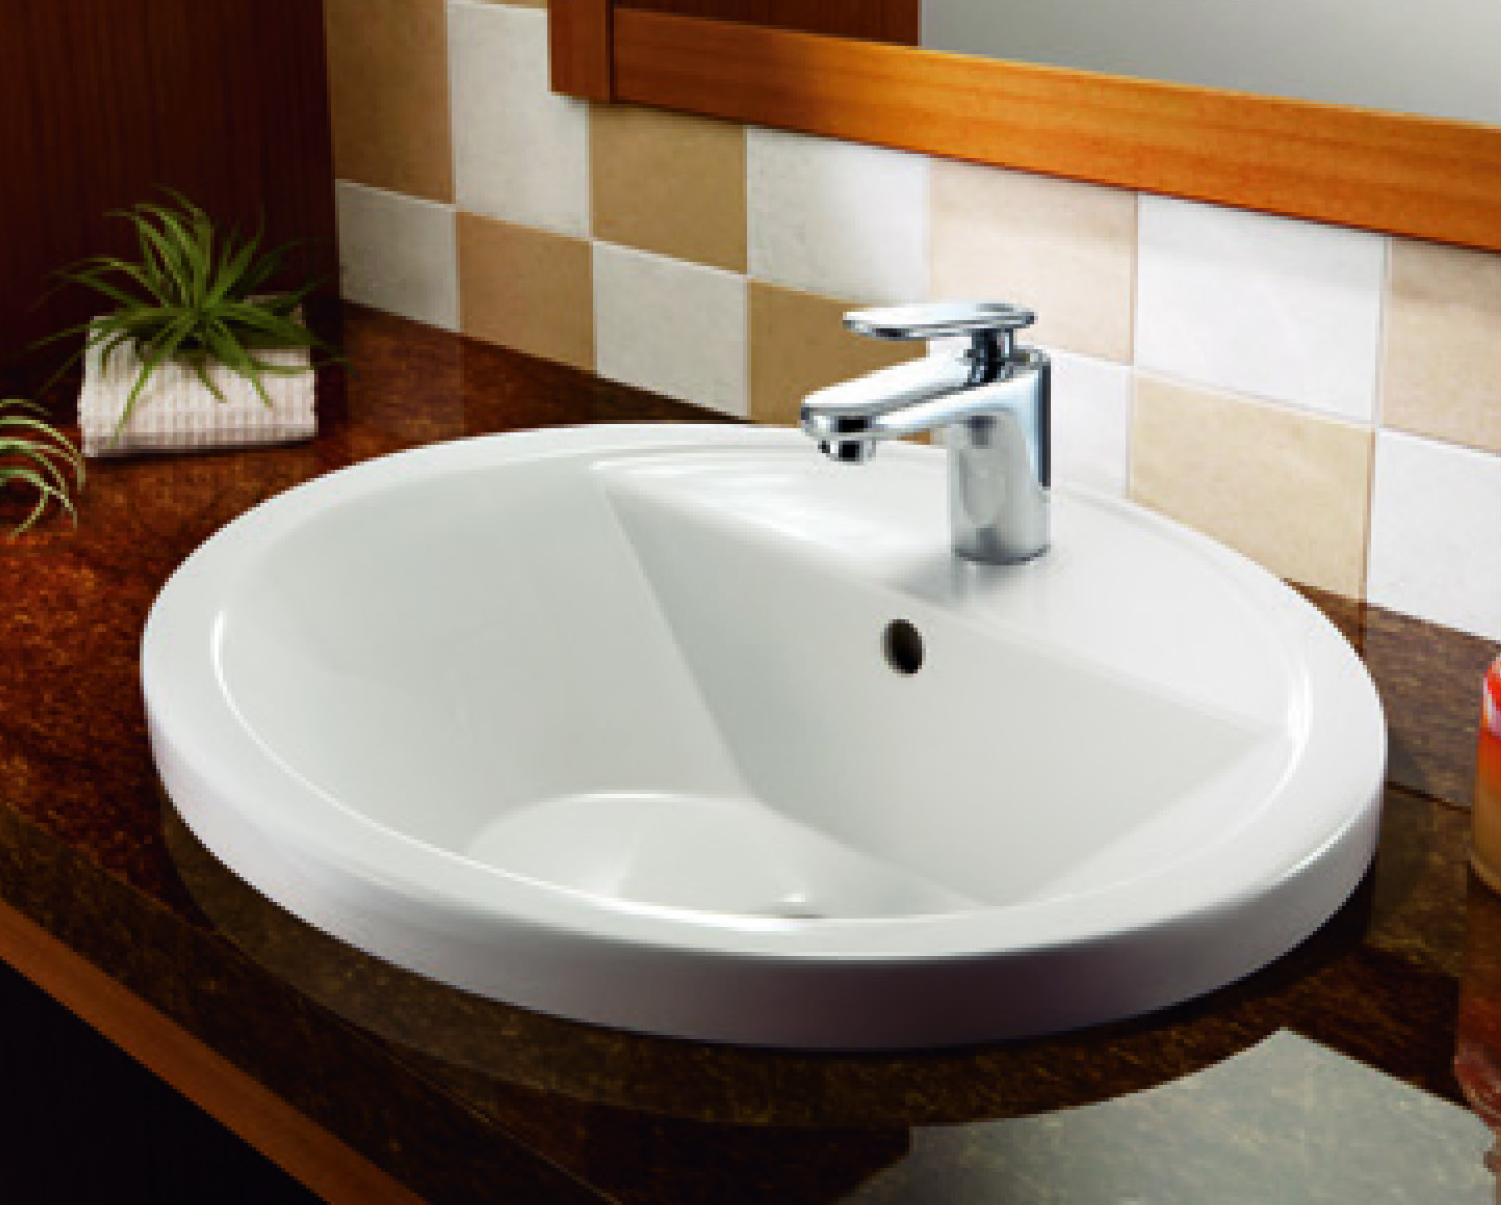 オーバル型オーバーカウンター洗面器+ユーロスマートコスモポリタン洗面混合栓(床給水・床排水タイプ)